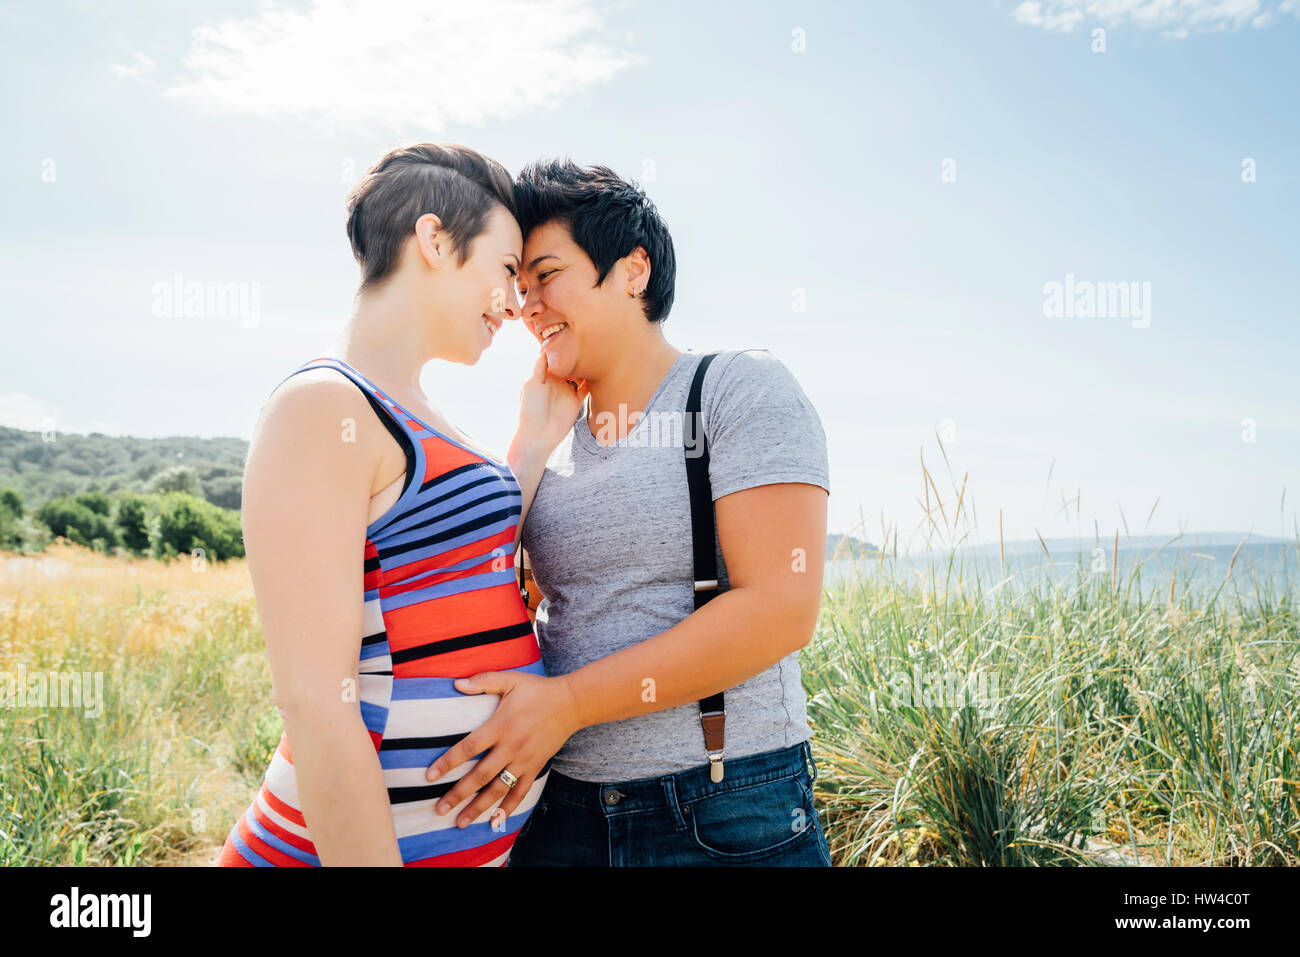 Lesbiennes enceintes couple hugging outdoors Banque D'Images